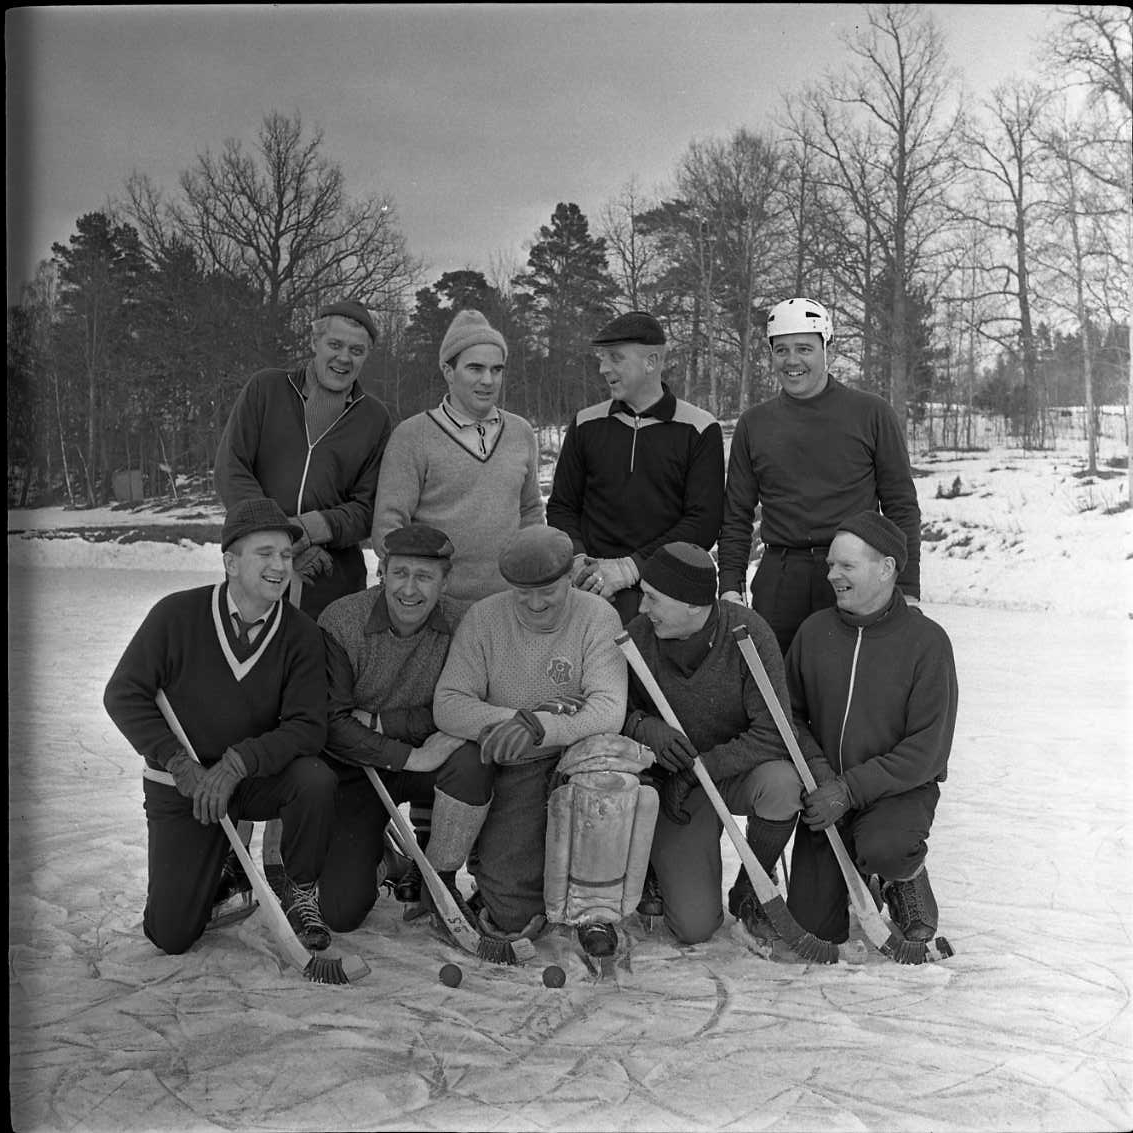 Lagbild med Gränna AIS veteranlag i bandy 1966. På bilden syns Lennart Blom, H Magnusson, I Karlsson, I Lagosi, S-E Thörn, "Kanon" Moreau, "Lalle", "Rulle" och "Knatten. De befinner sig sannolikt på Åsavallen, Grännaberget.